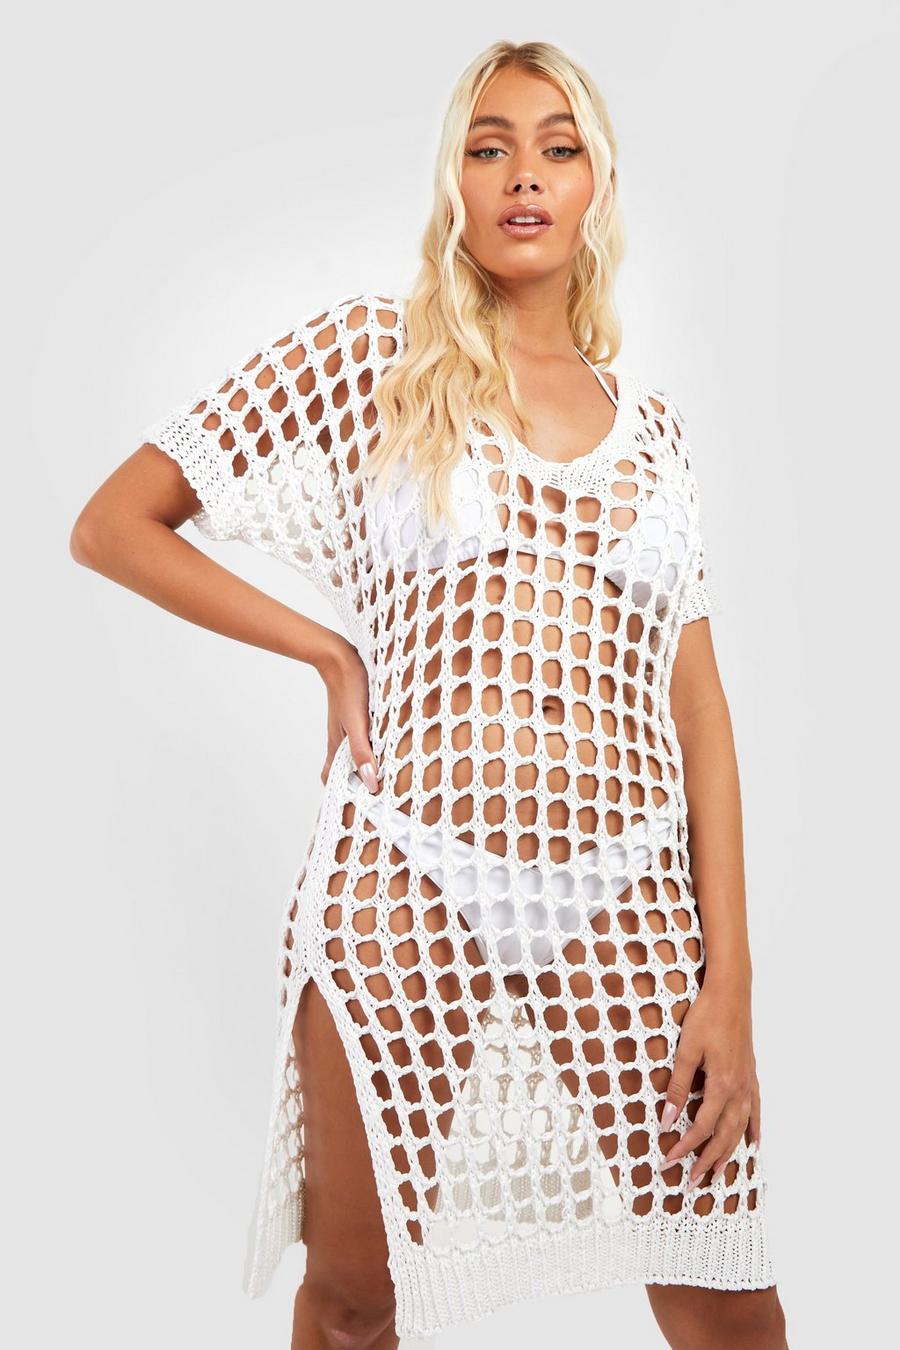 White Crochet Cover Up Beach Dress